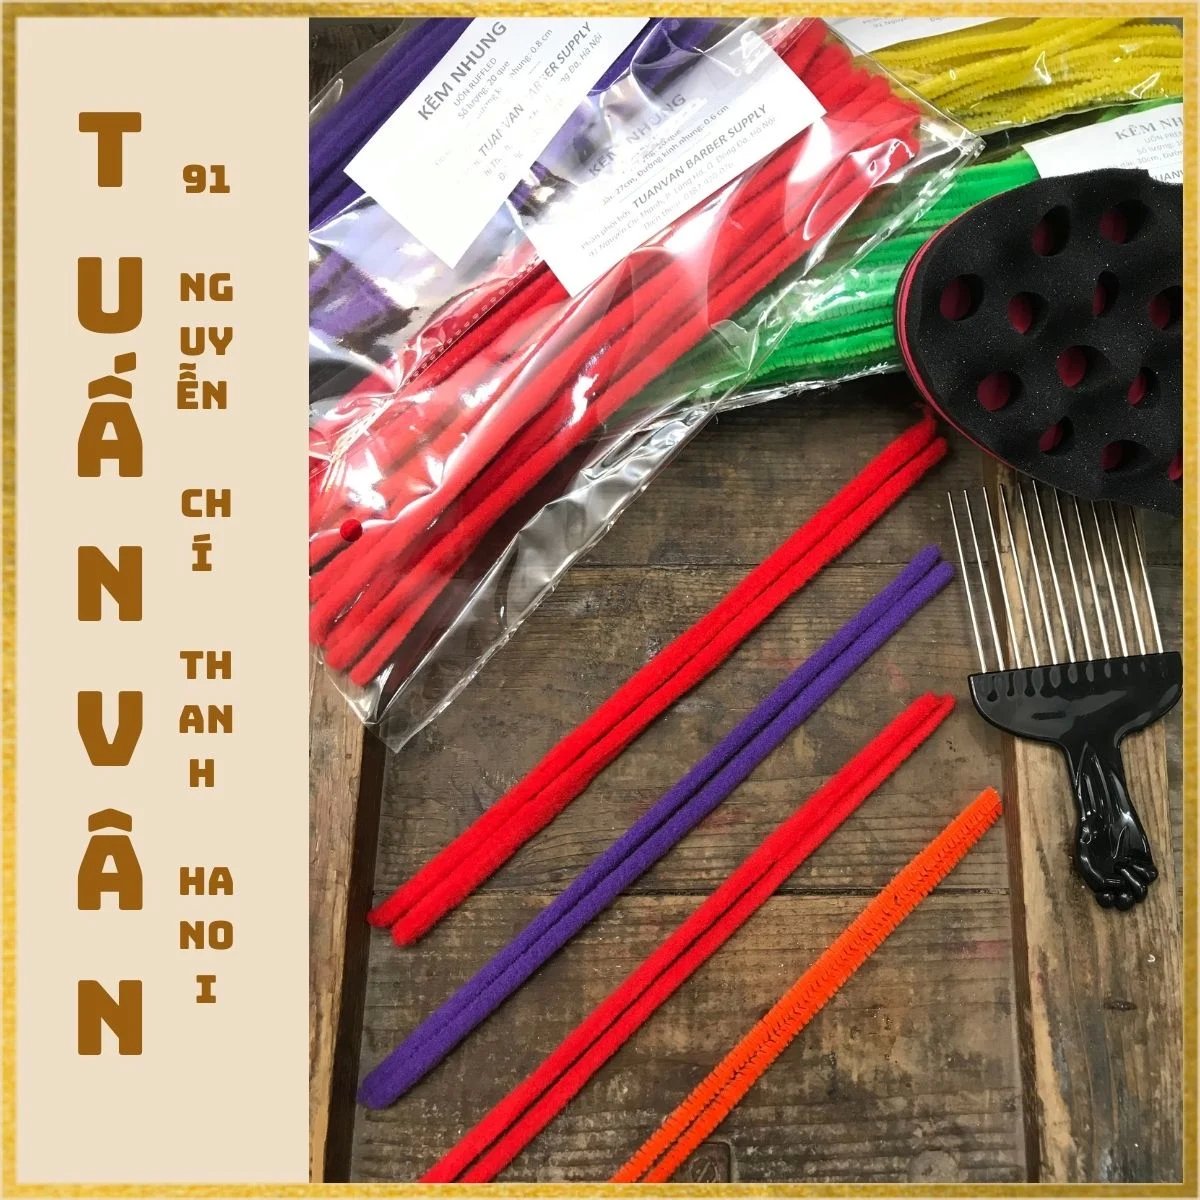 Dụng cụ uốn tóc xoăn thông minh Tashuan TS5290 chính hãng tại ALOBUY Việt  Nam